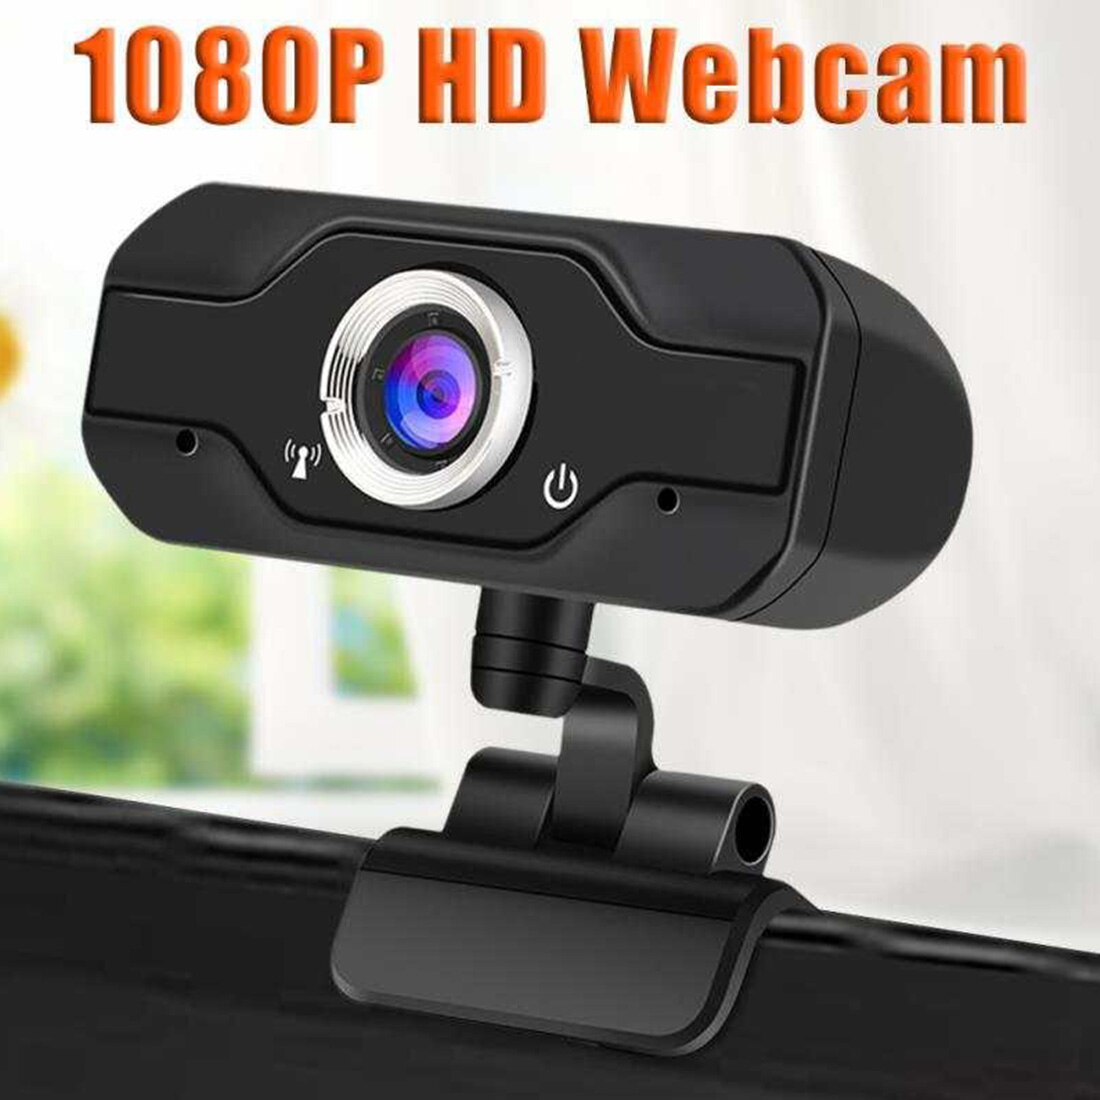 Web Camera Met Microfoon Hd Webcam 1080 P Usb Camera 110 Graden Draaibaar 2.0 Video-opname Voor Pc Computer